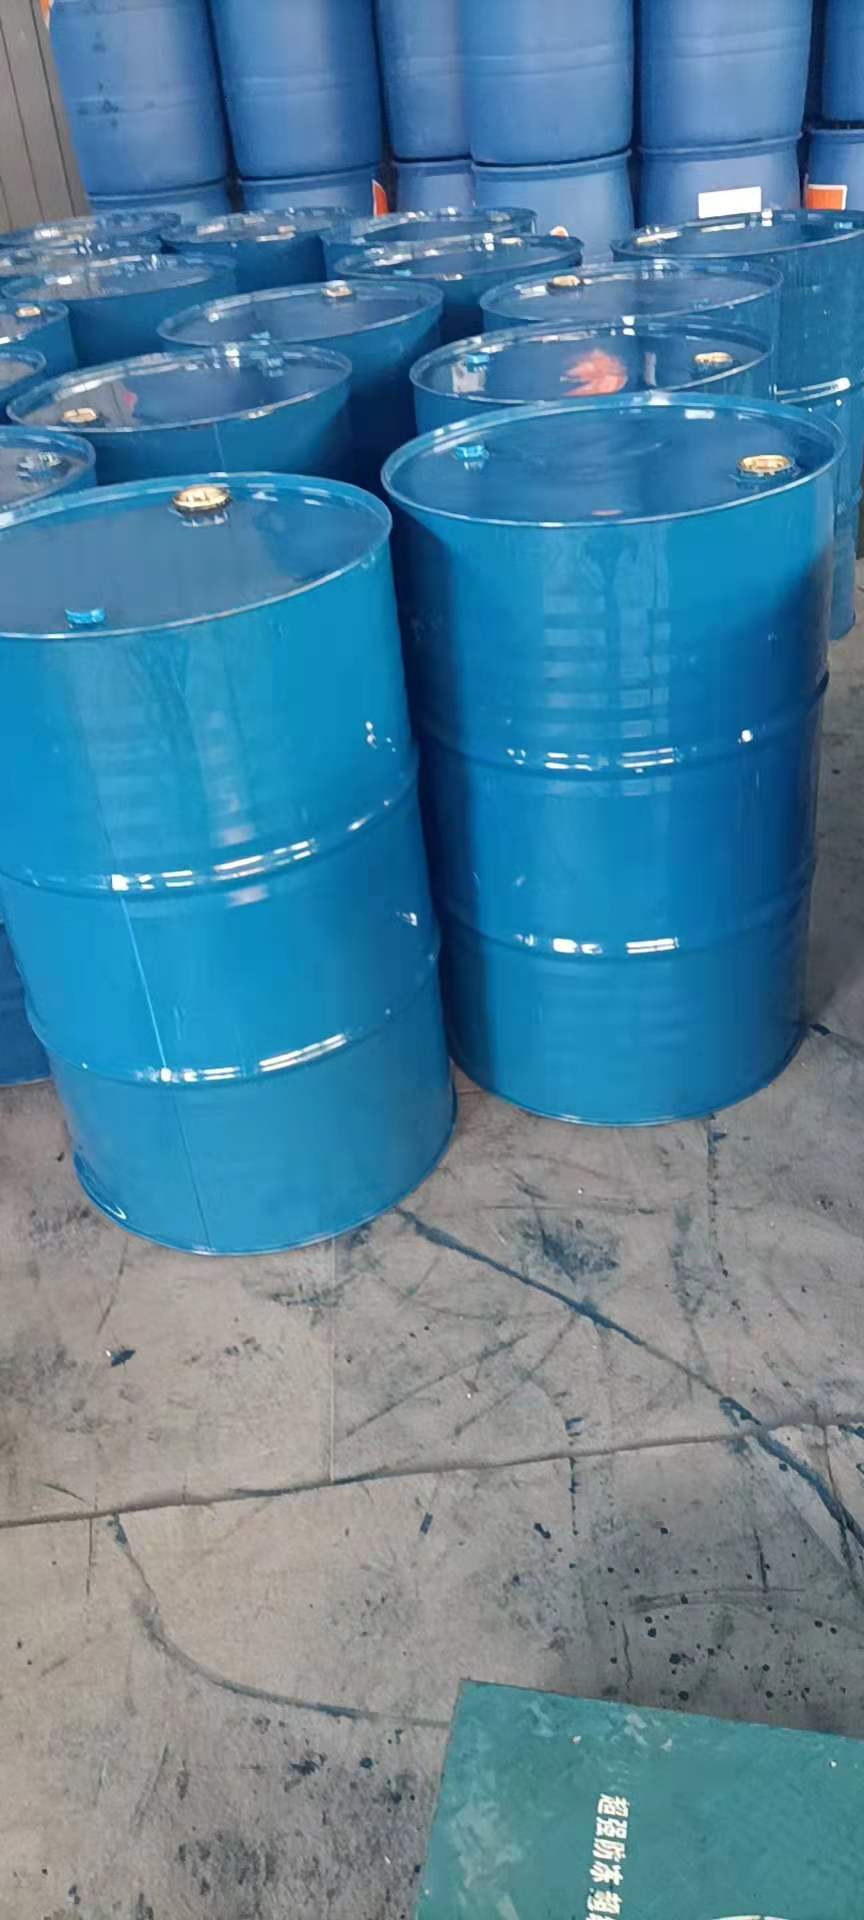 安徽翻新铁桶批发化工铁桶供应锥形桶价格万硕工贸